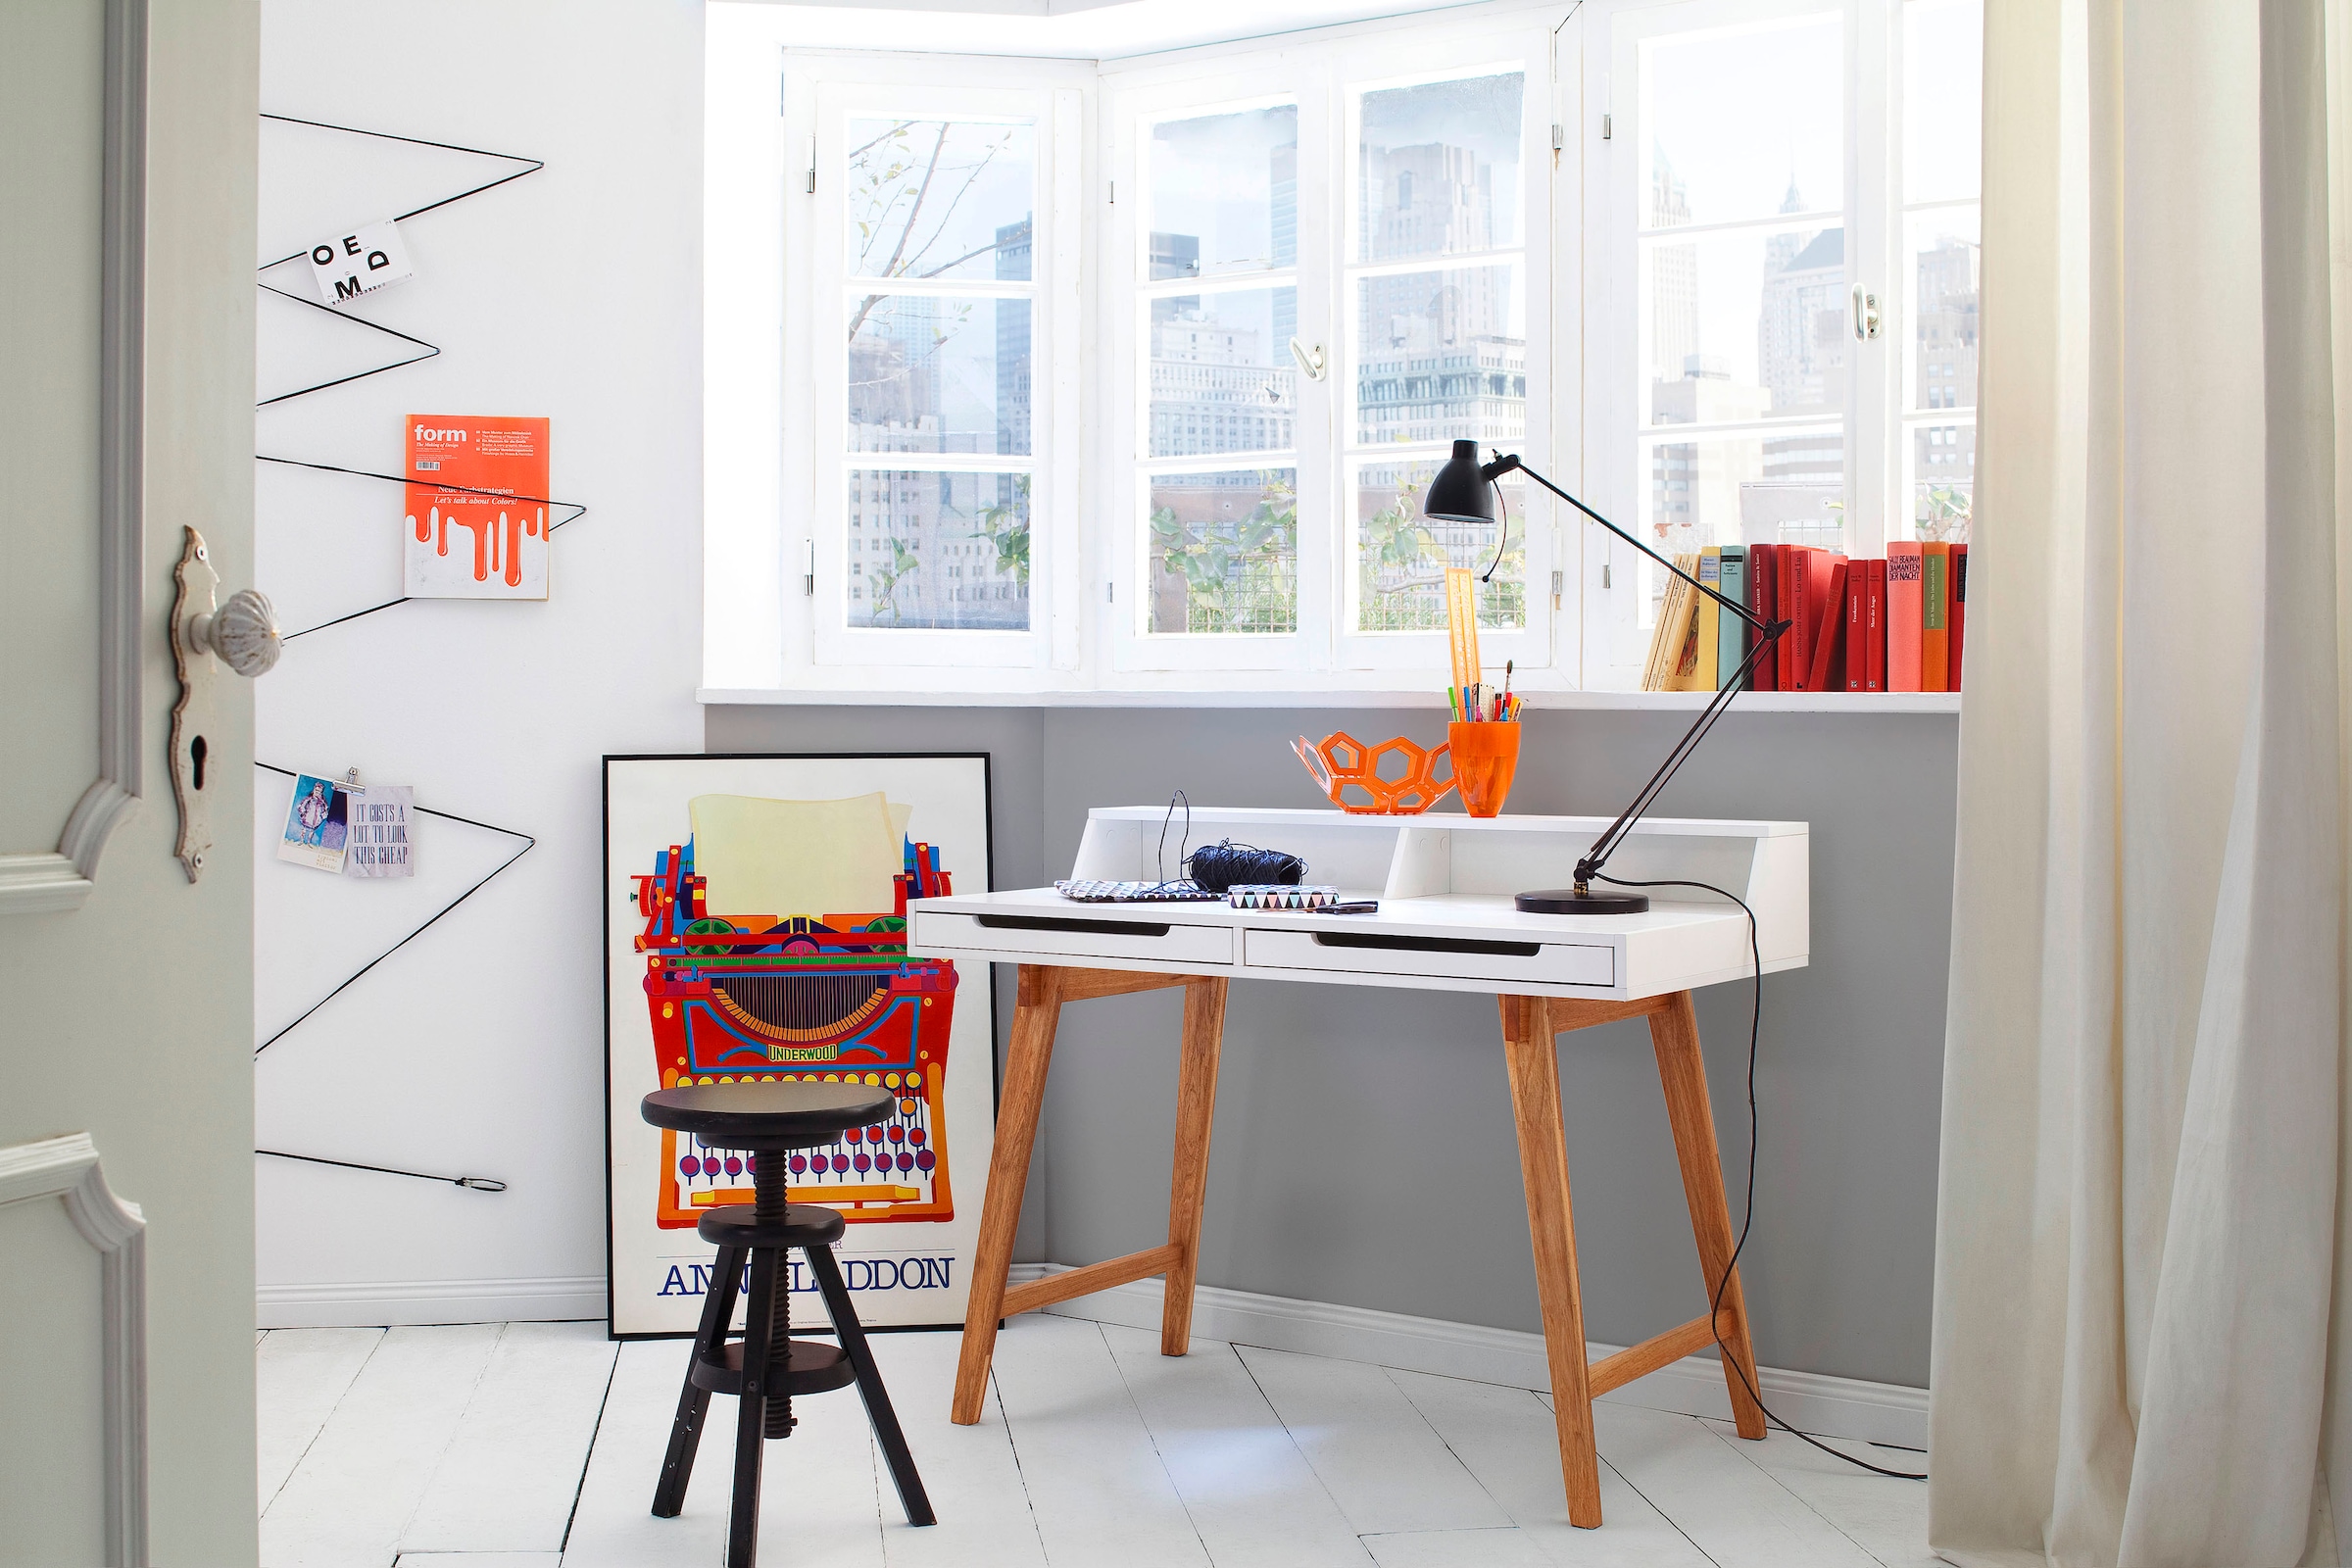 MCA furniture Schreibtisch »Tiffy«, weiss matt lackiert, Gestell Massivholz buchefarben, Breite 110 cm